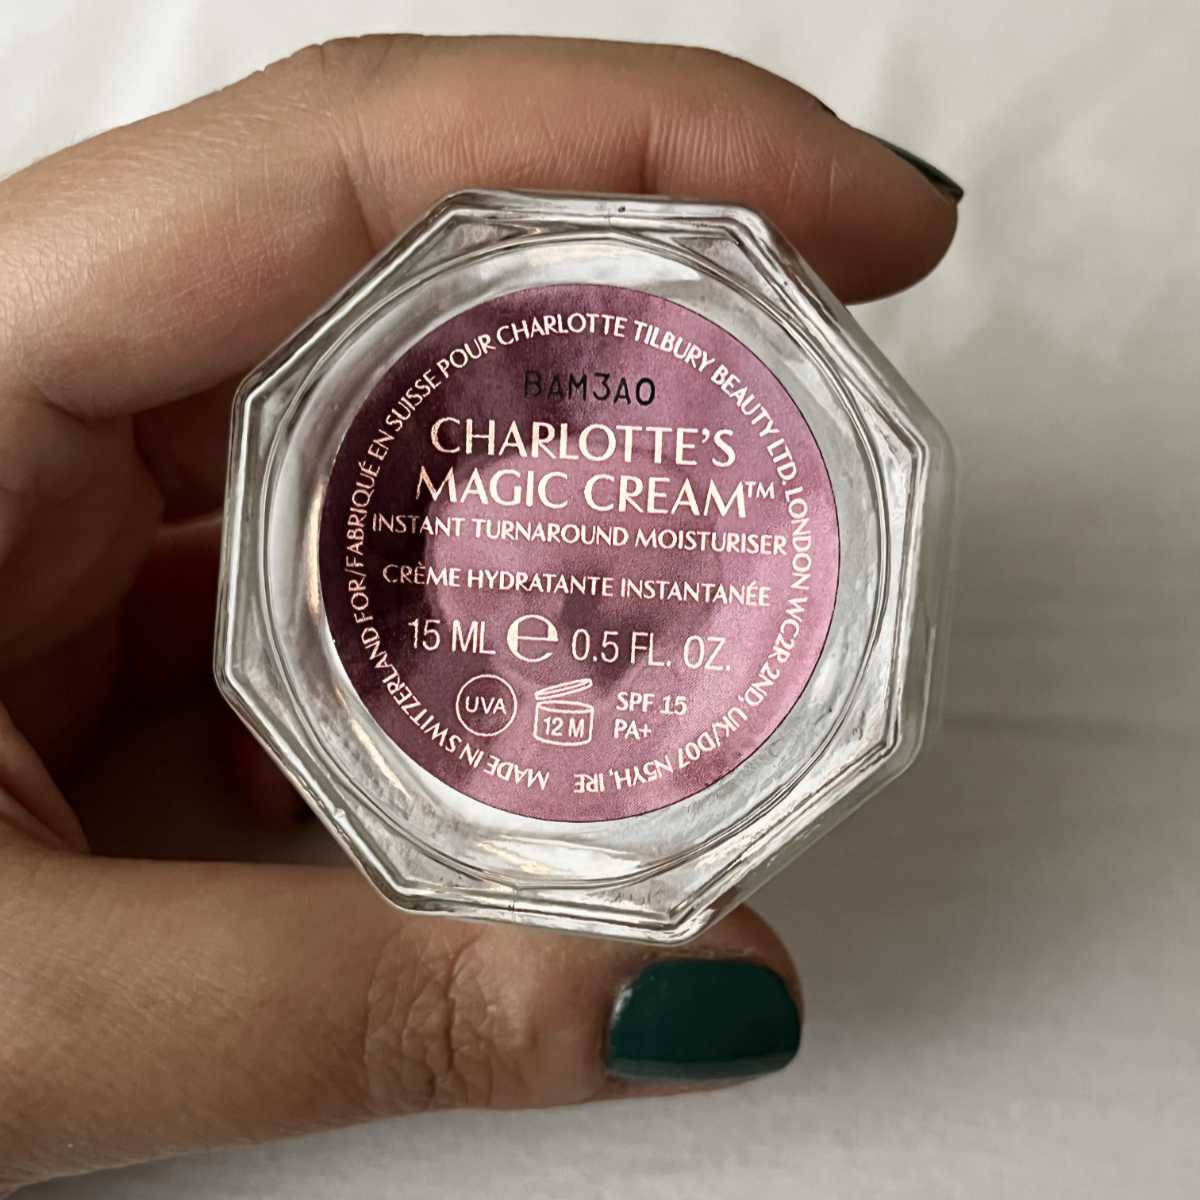 Charlotte Tilbury crema viso Charlotte's Magic Cream